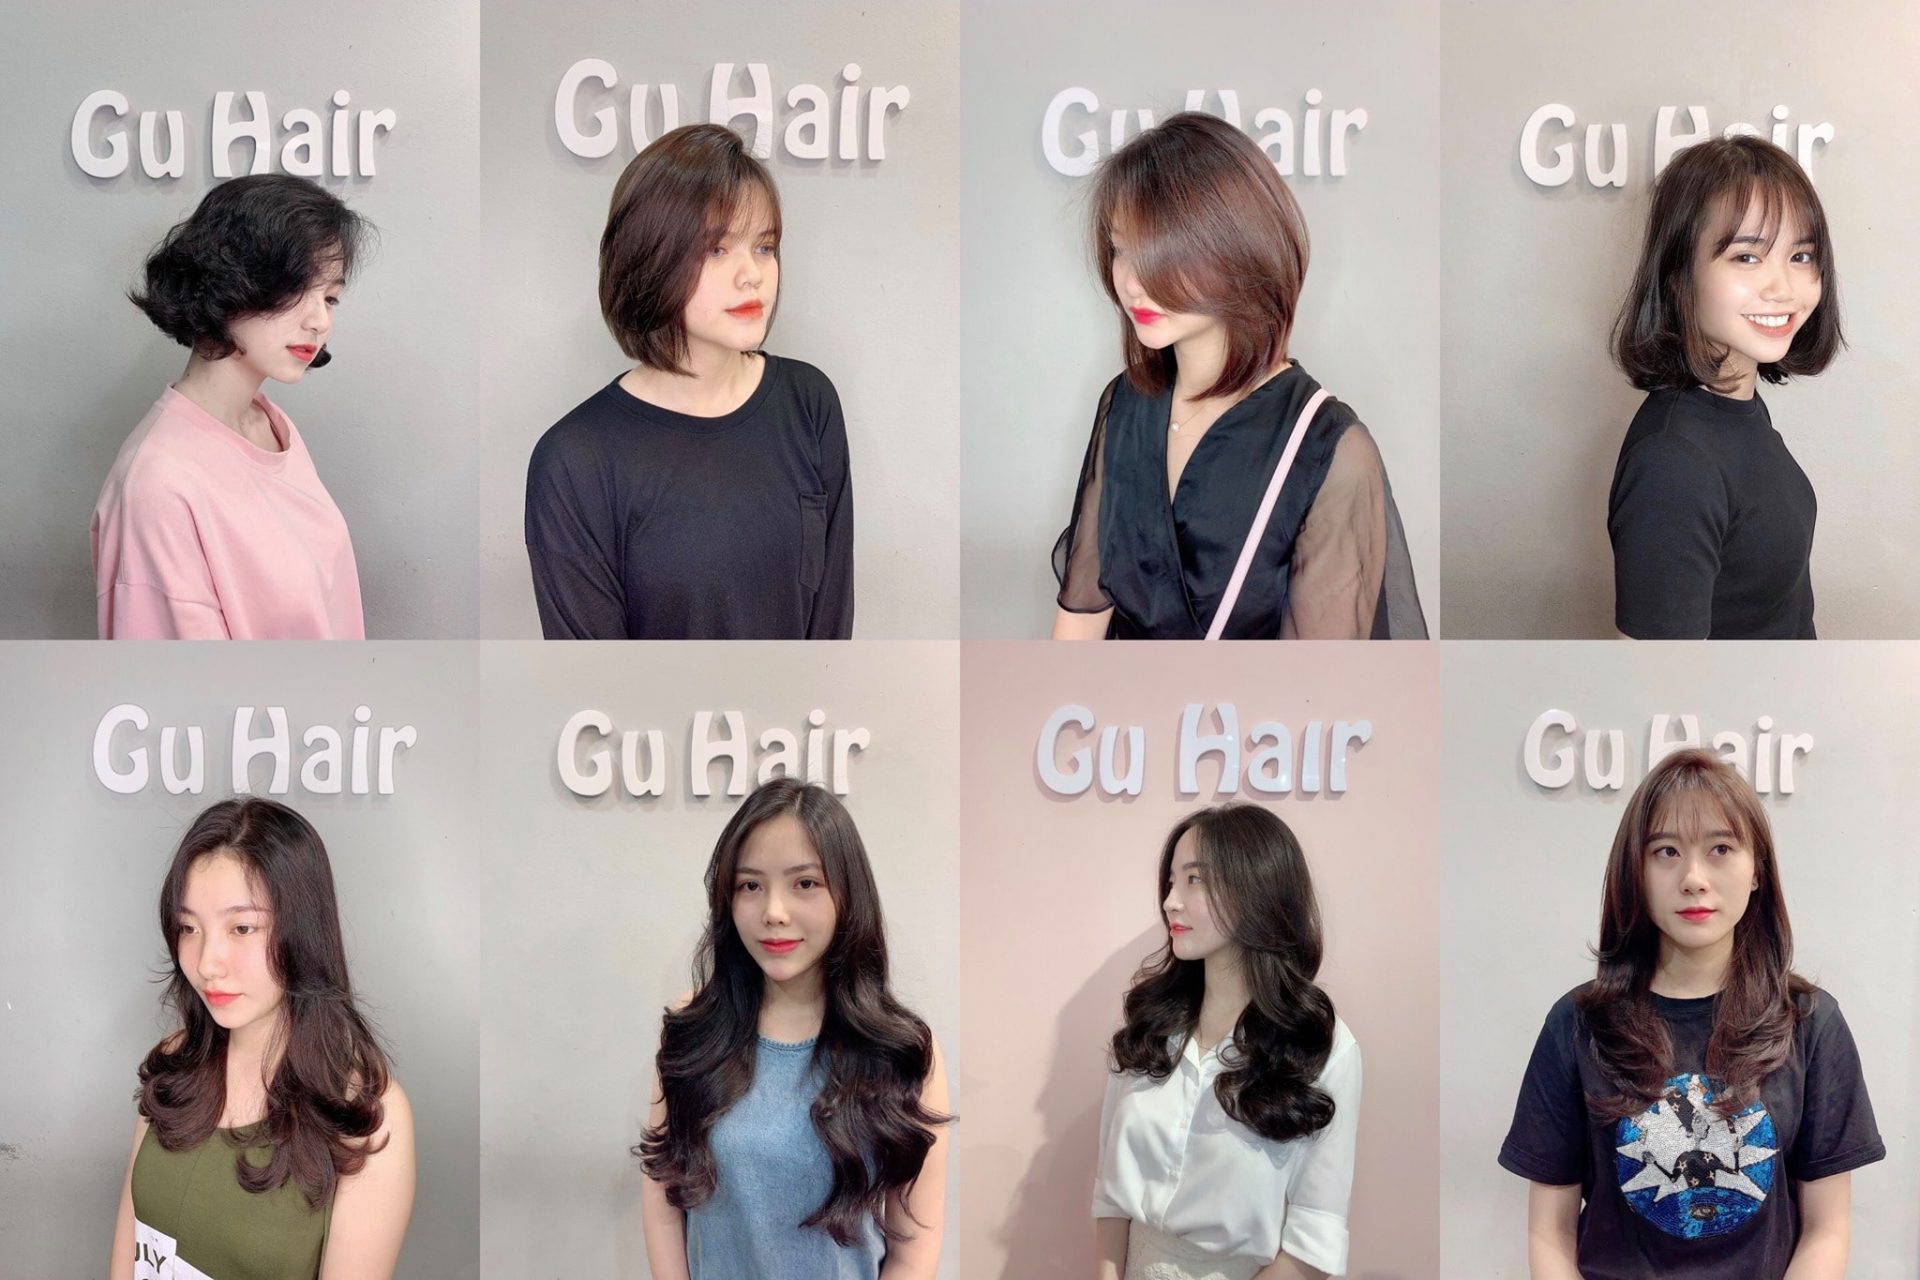 Gu Hair Salon